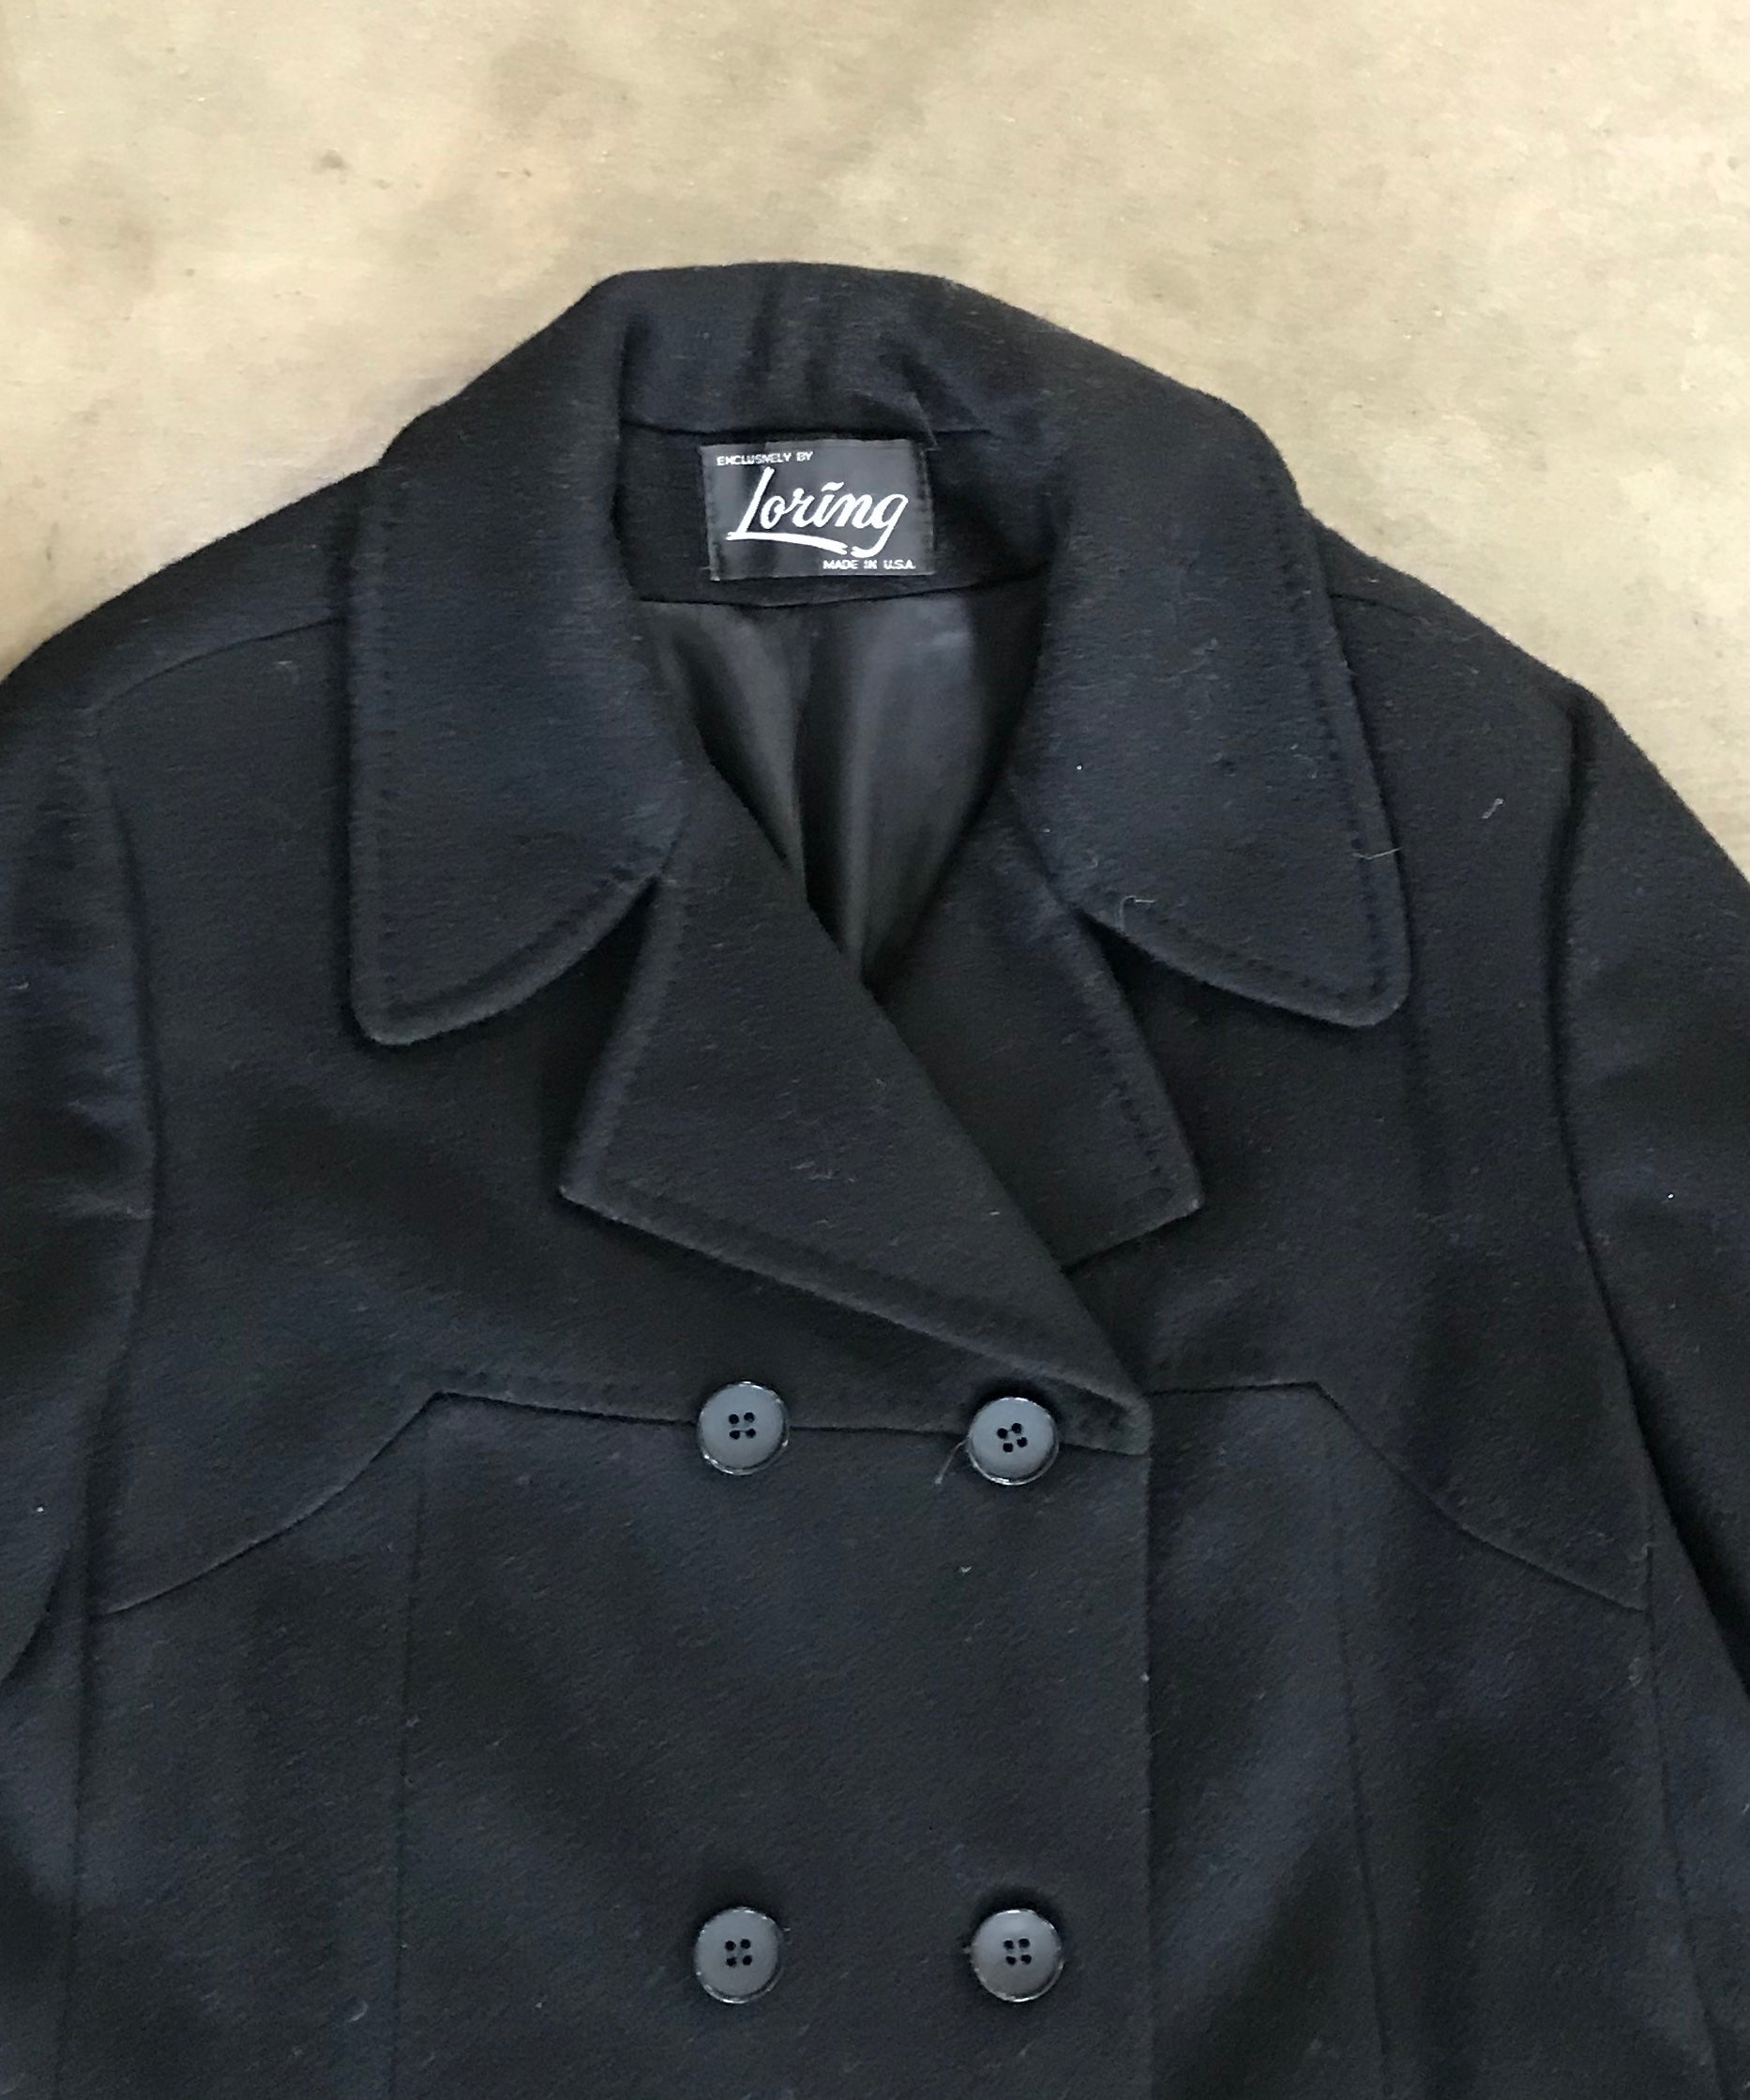 Black Cashmere Long Pea Coat